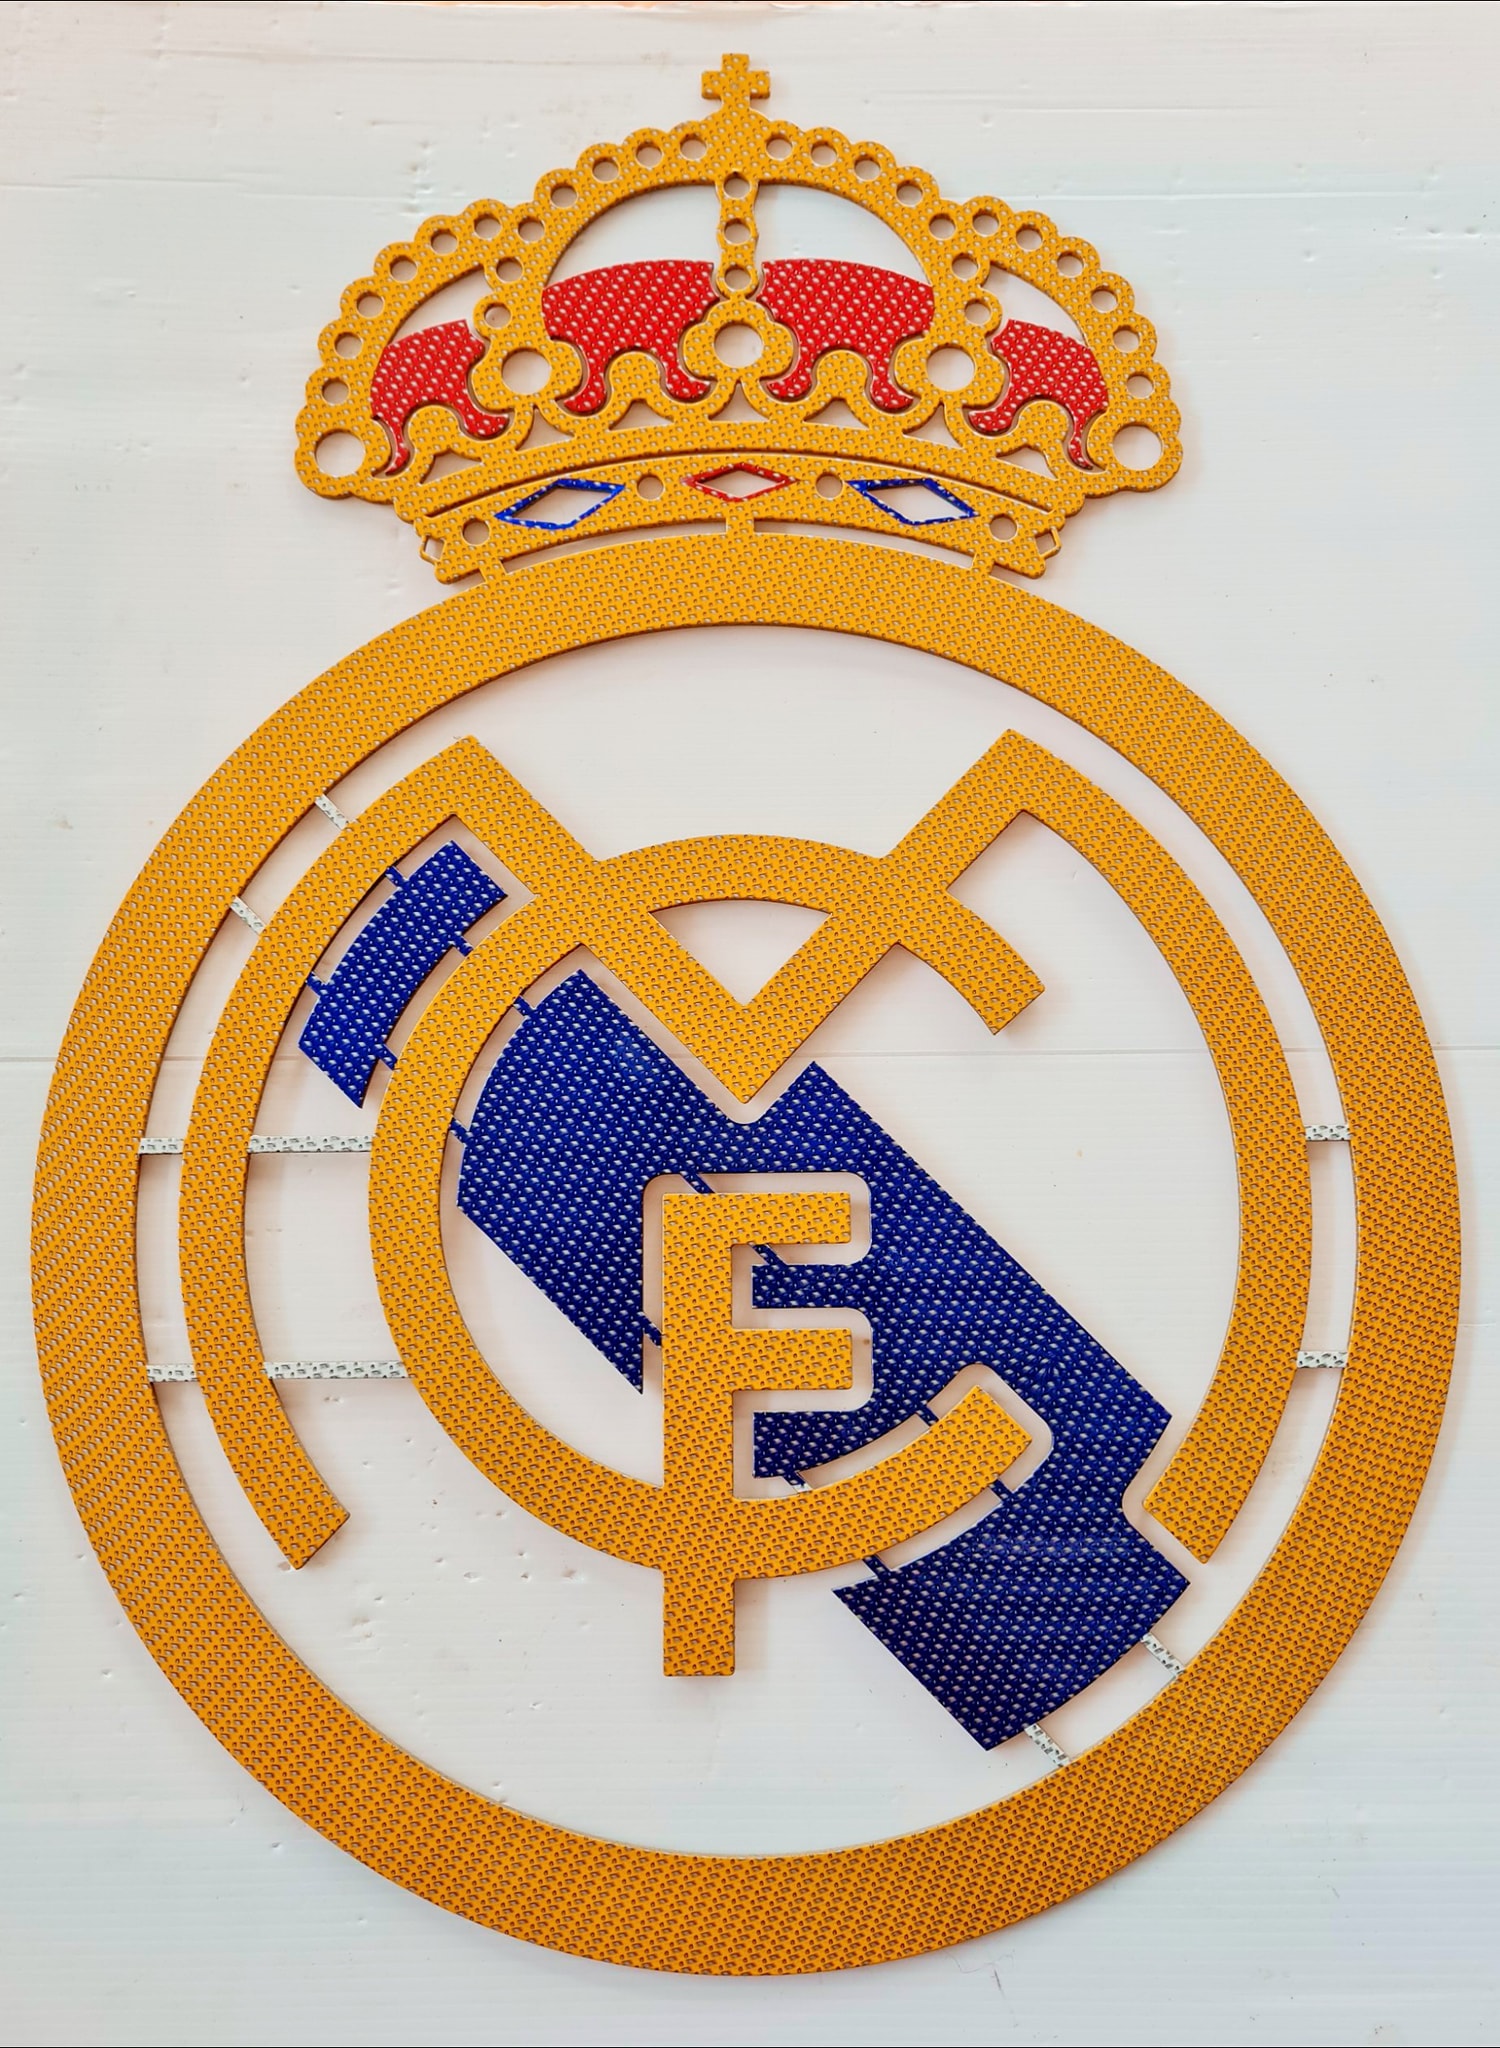 Real Madrid โลโก้ รีลมาดริด เหล็กตัดเลเซอร์ขนาด 60x43 cm.หนา 3 mm.เคลือบเคฟล่าเวอร์ชั่น top สวยสุด คงทนแข็งแรงไม่เสียรูปทรง ทนแดดทนฝนทุกสภวะอากาศ